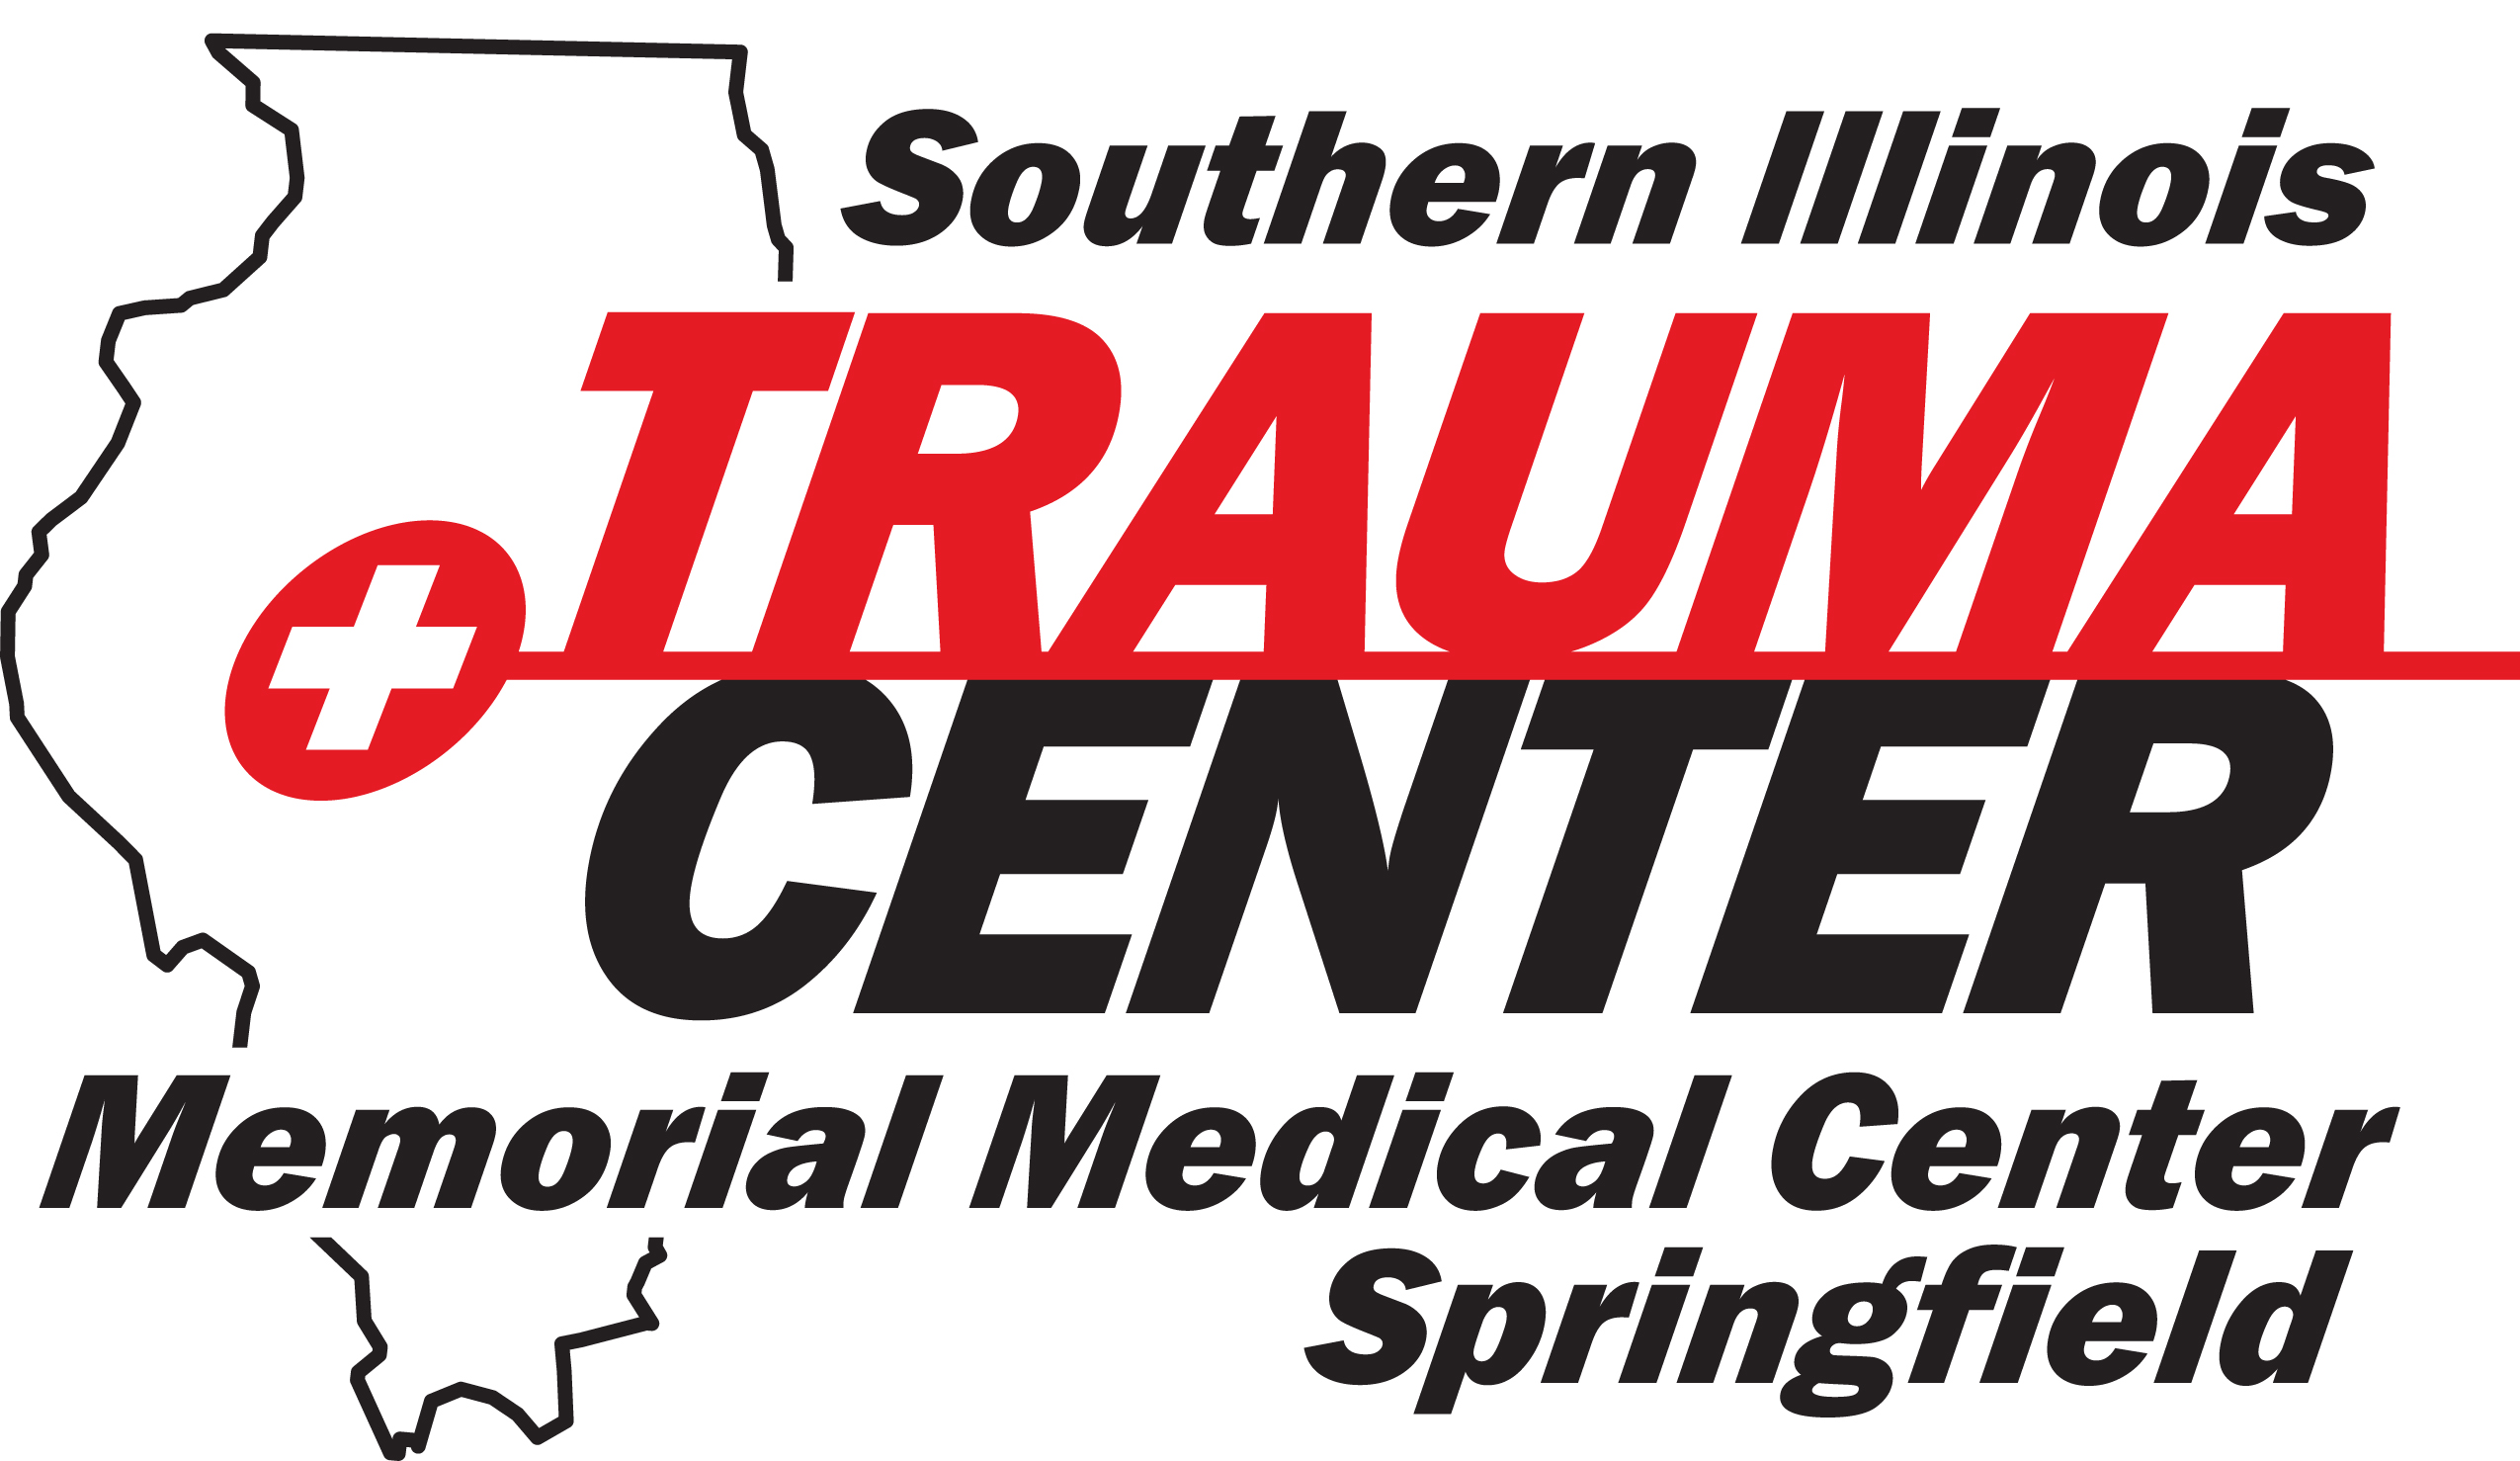 Dr. Whitehurst, SIU Medicine/Trauma Center